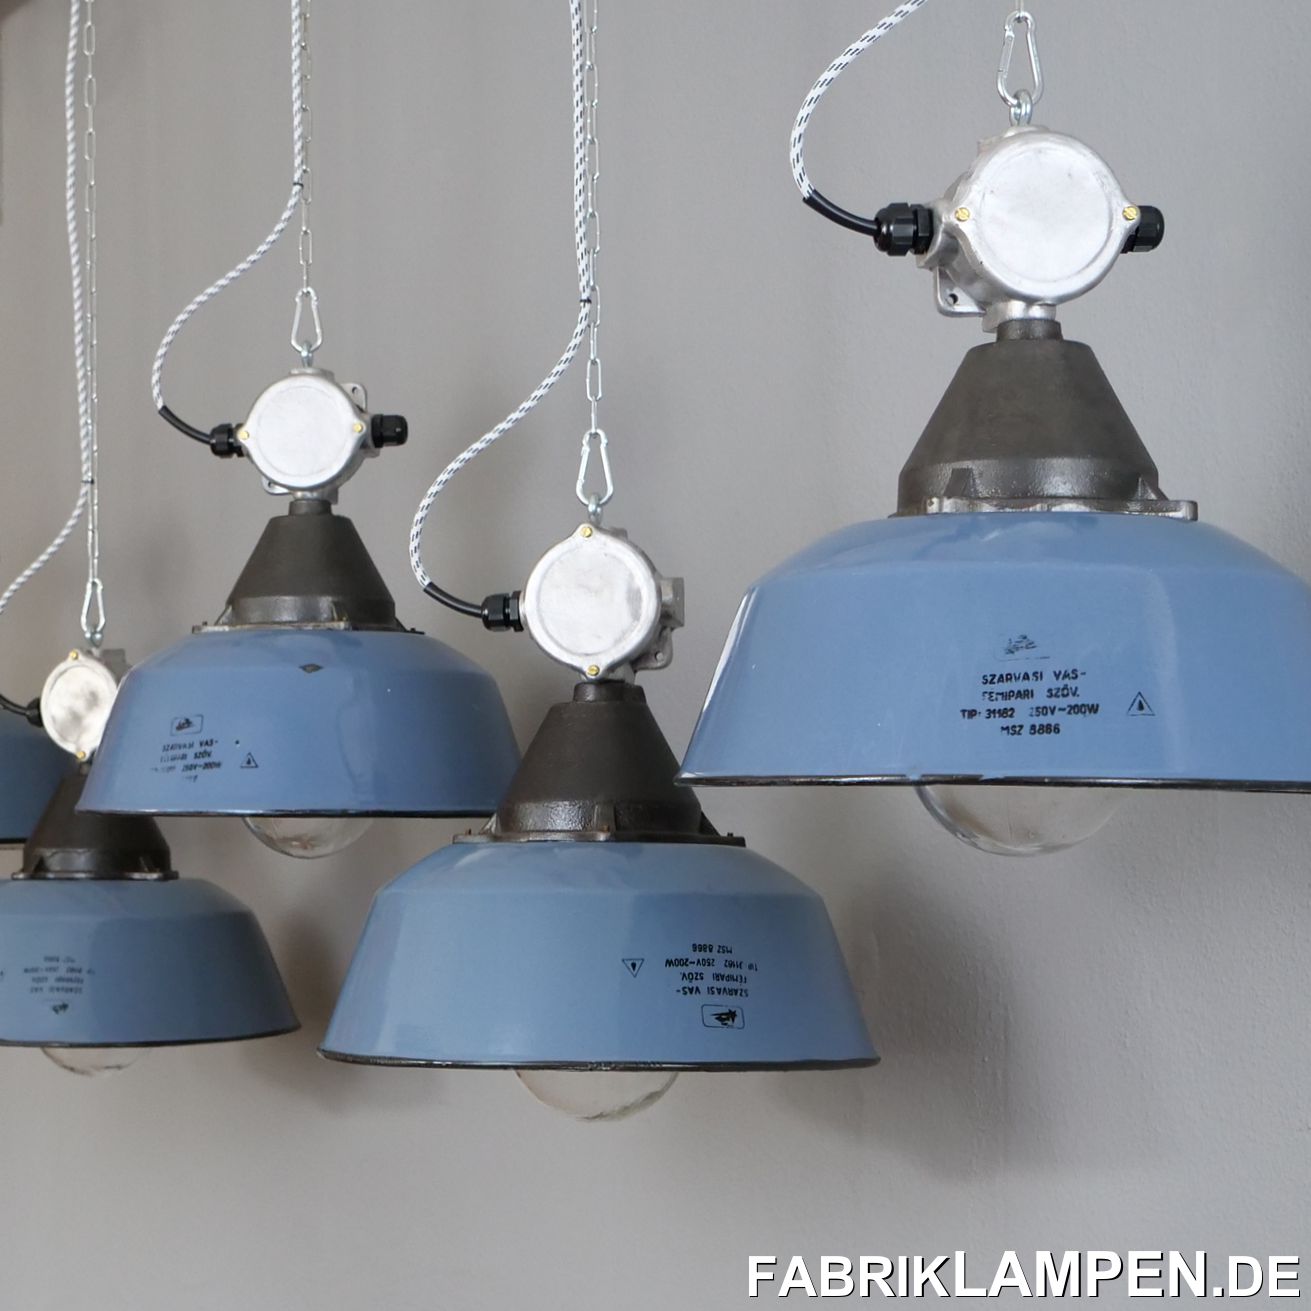 fabriklampen.de - old industrial lamps